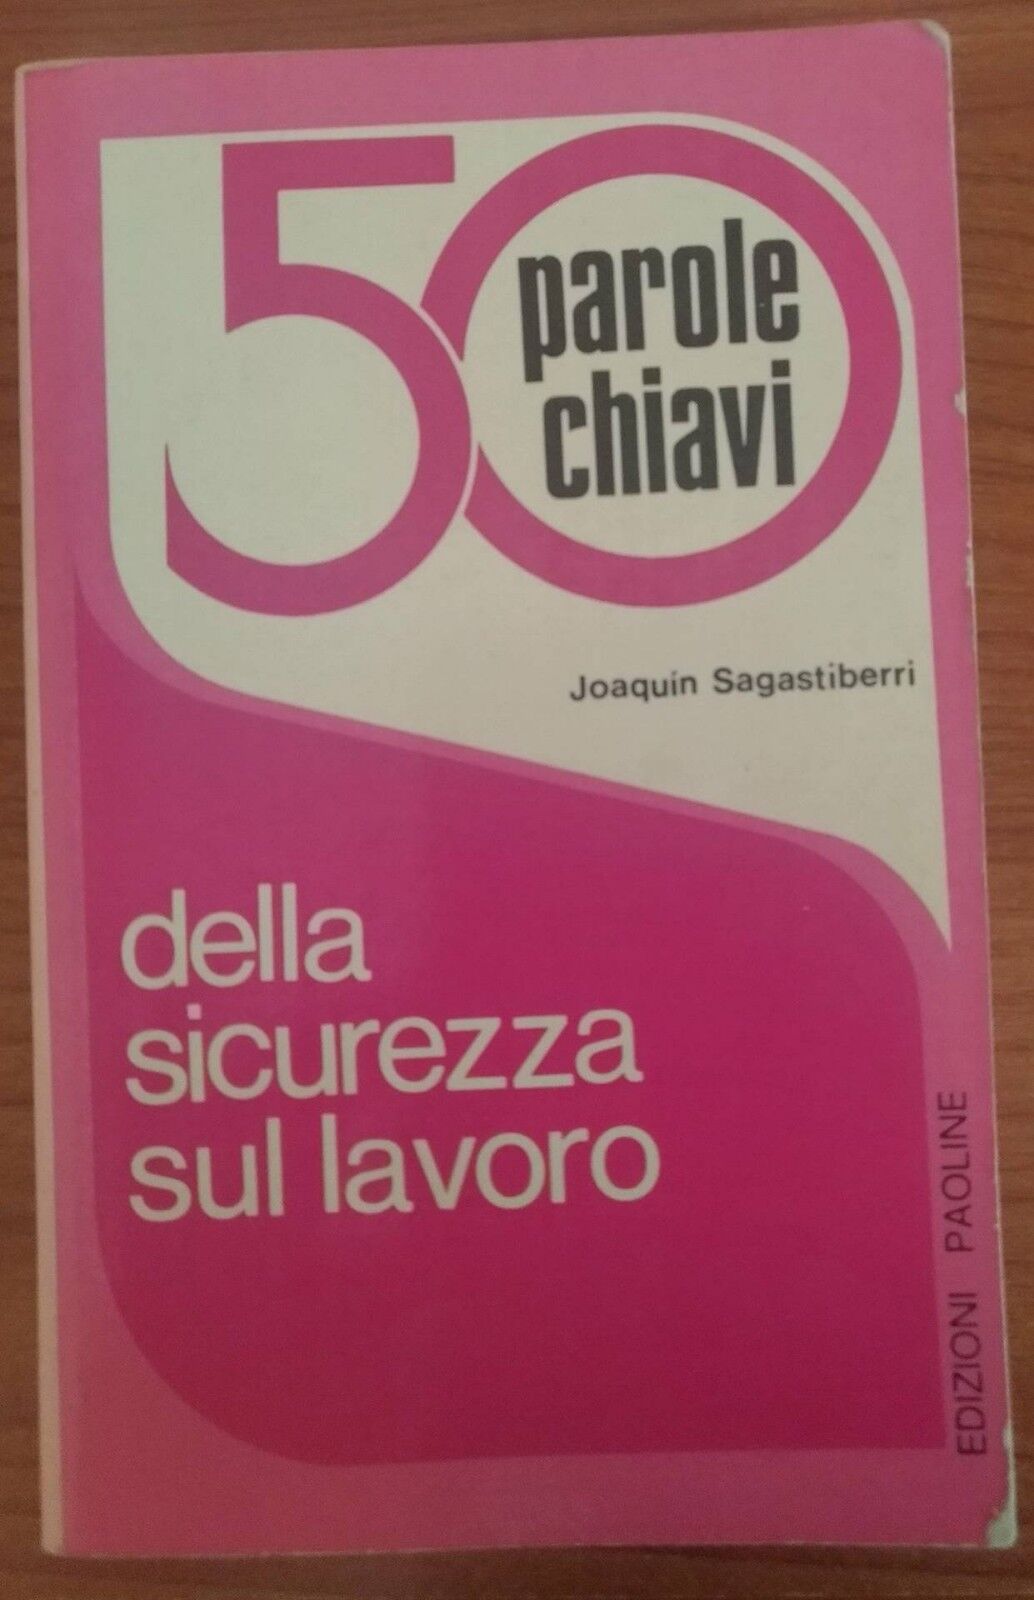 50 parole chiavi della sicurezza sul lavoro-Joaquin Sagastiberri,1976,Paoline- S